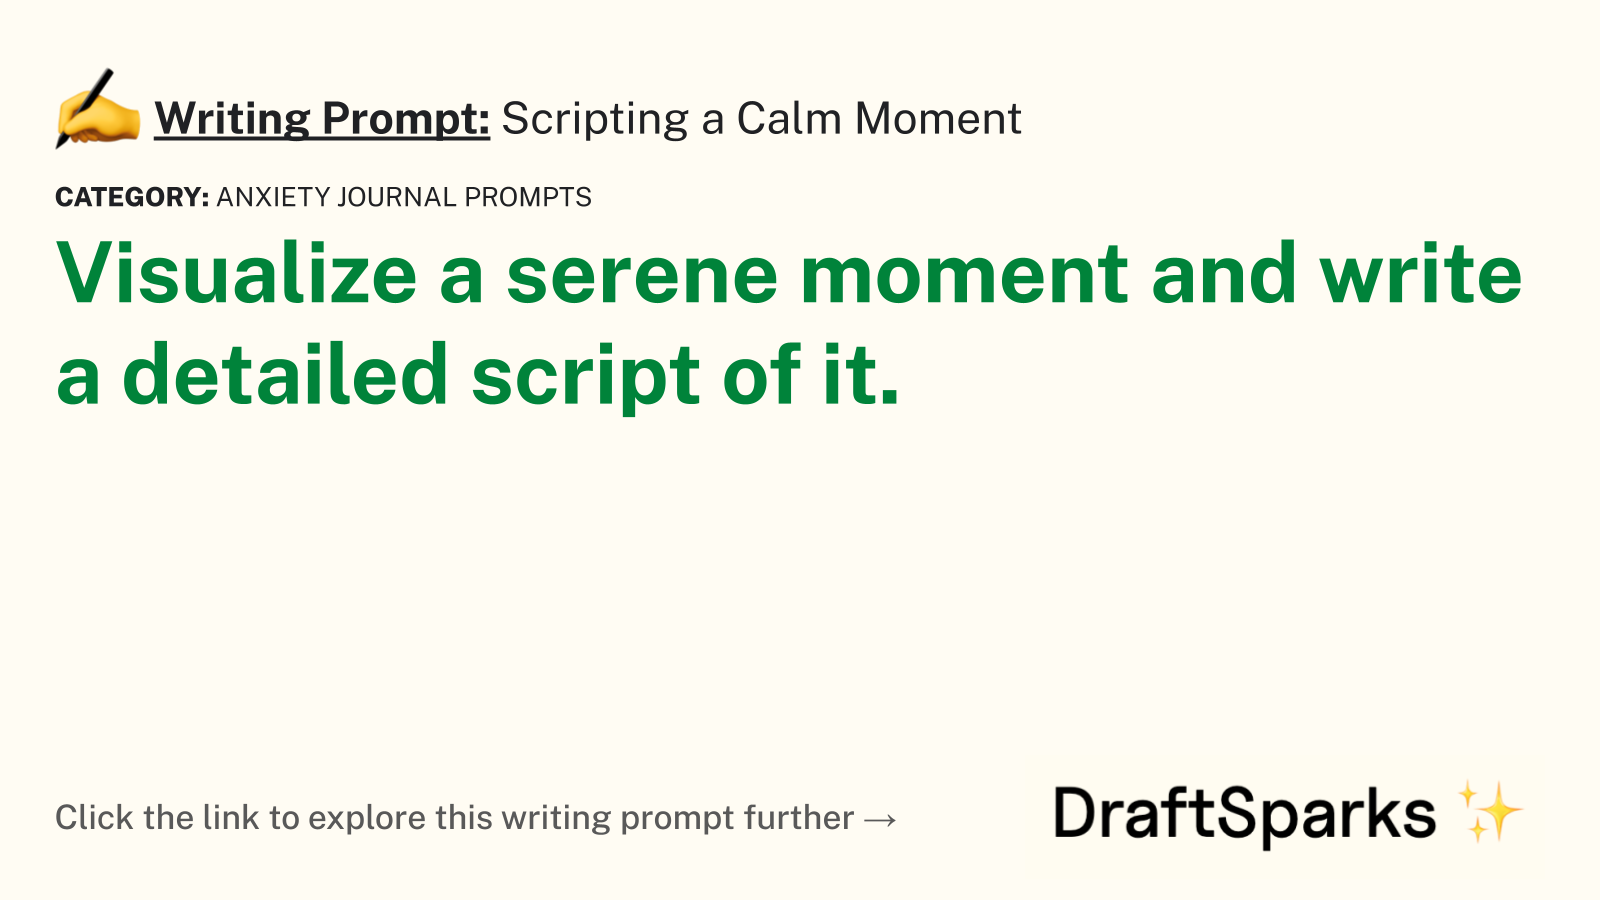 Scripting a Calm Moment